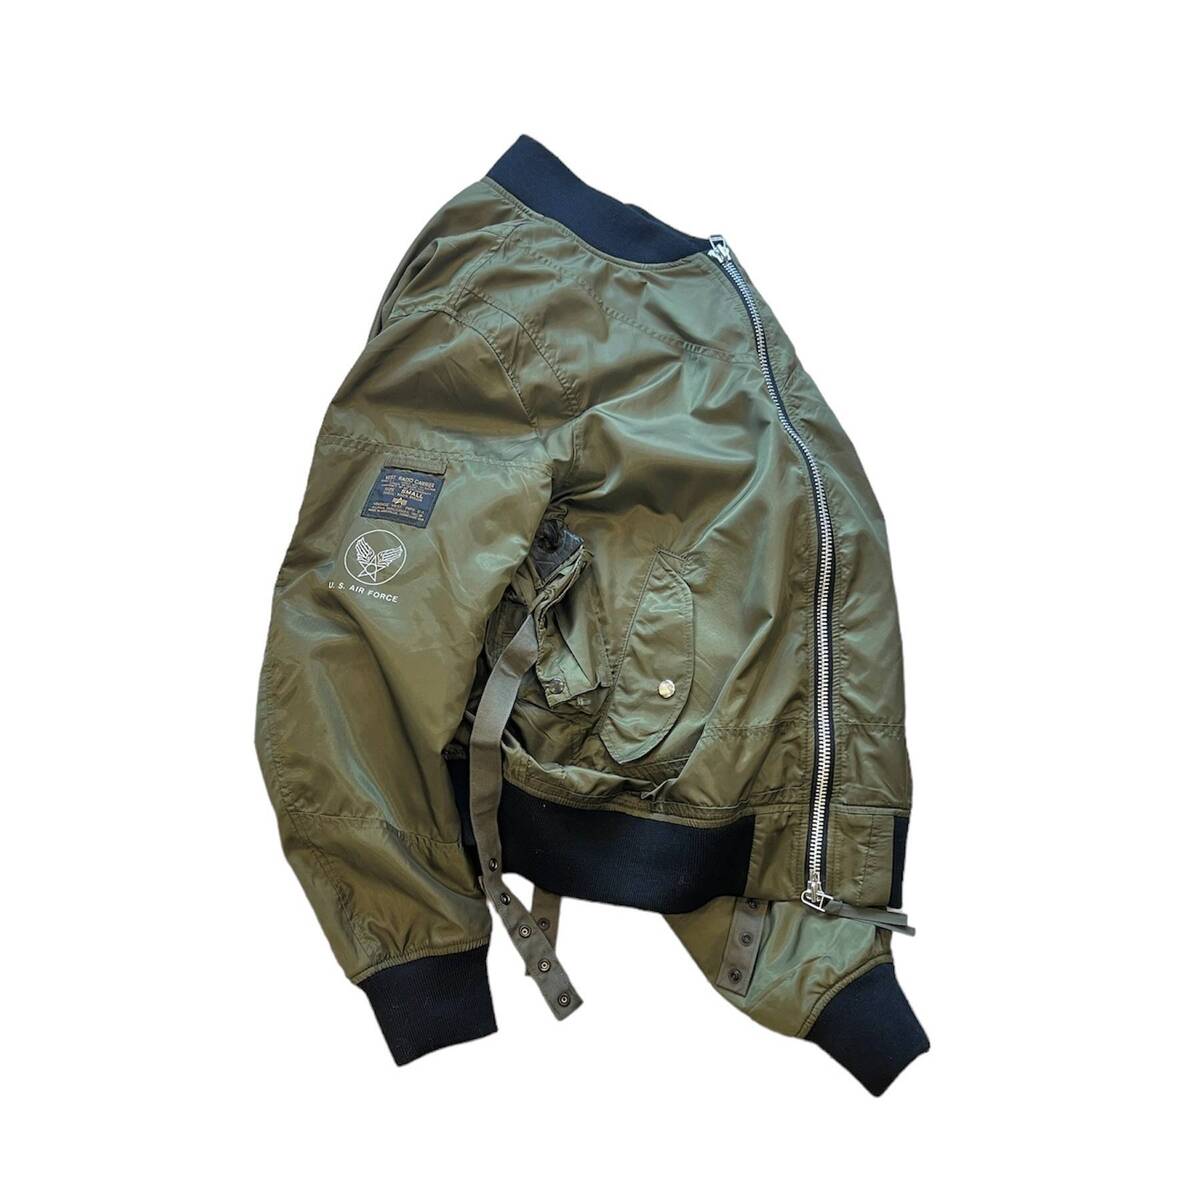 OLDPARK flight jacket E-1 vest - フリーストレイン のアイテム